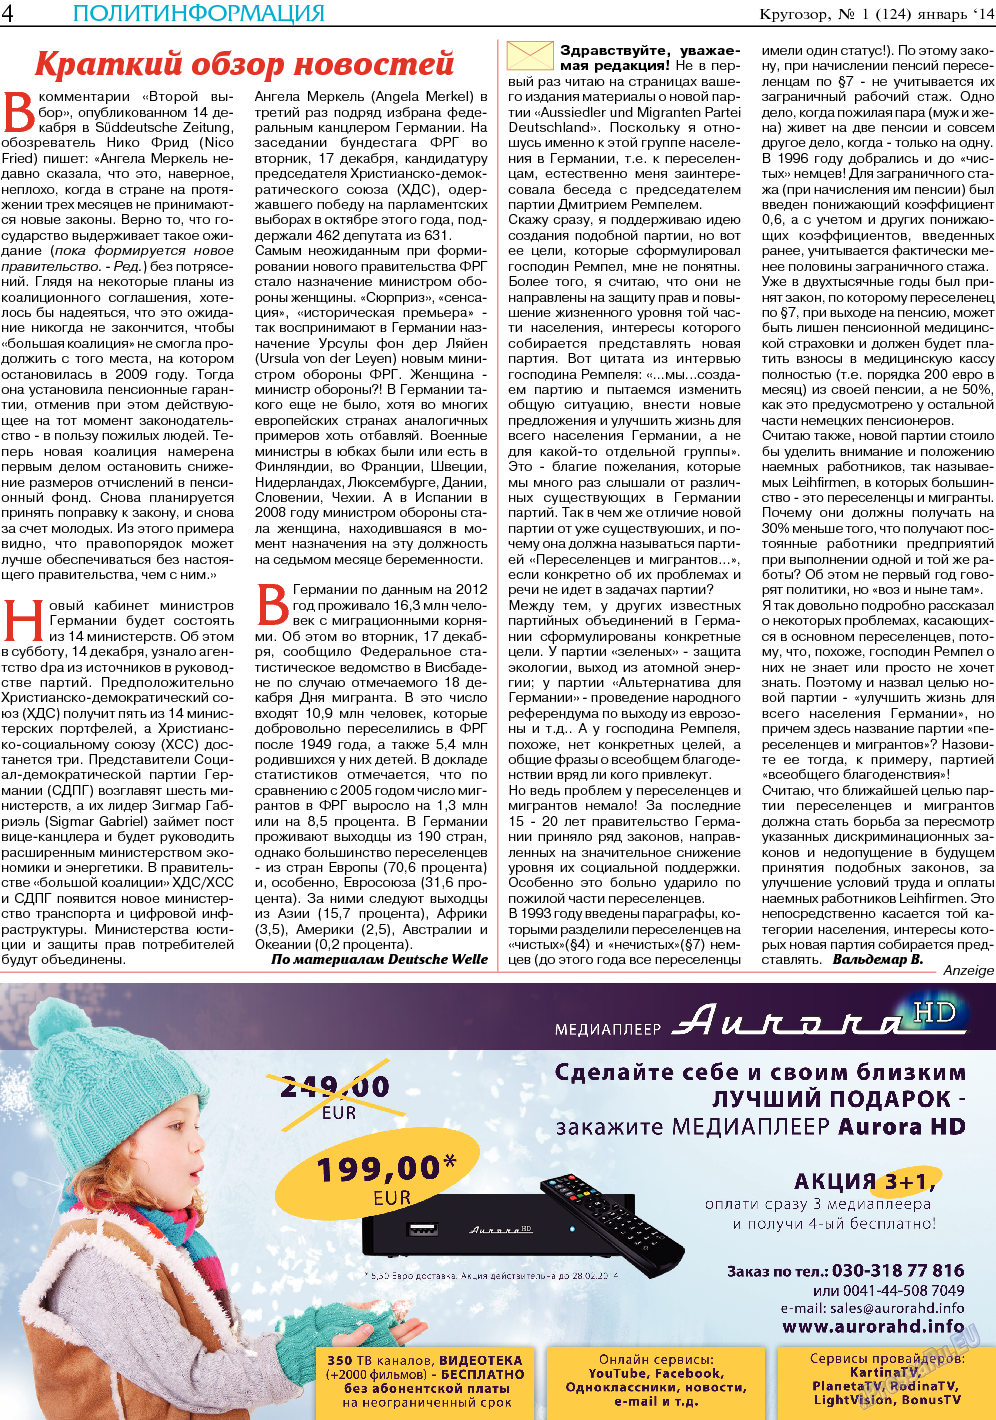 Кругозор, газета. 2014 №1 стр.4